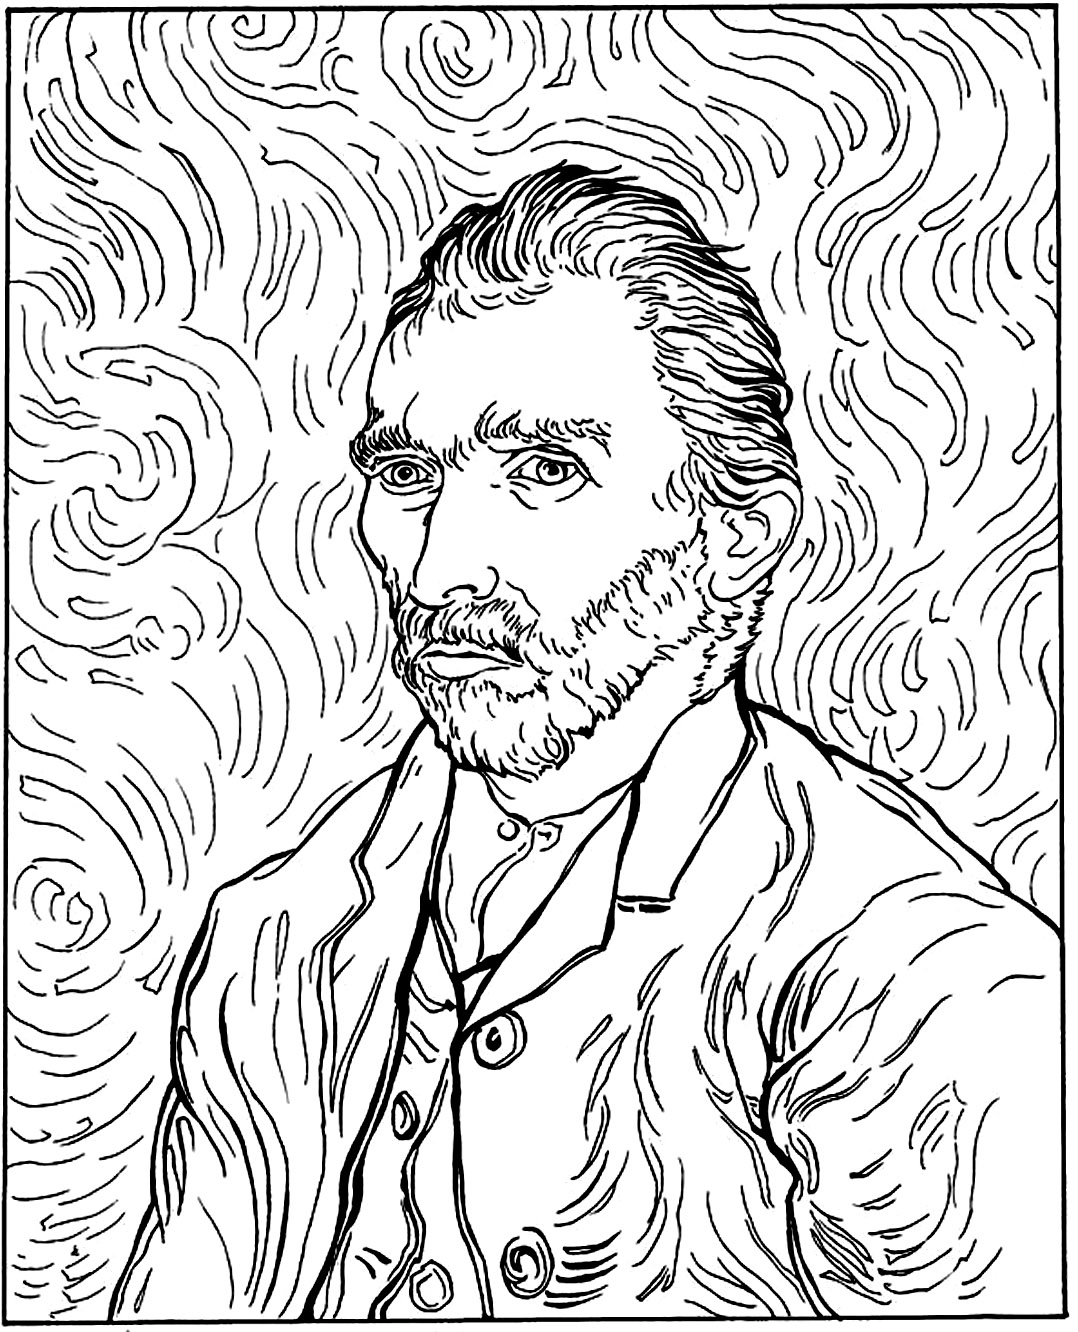 Van Gogh - Autorretrato (1889). Cor de Vincent Van Gogh num dos seus famosos auto-retratos, pintado em 1889.
